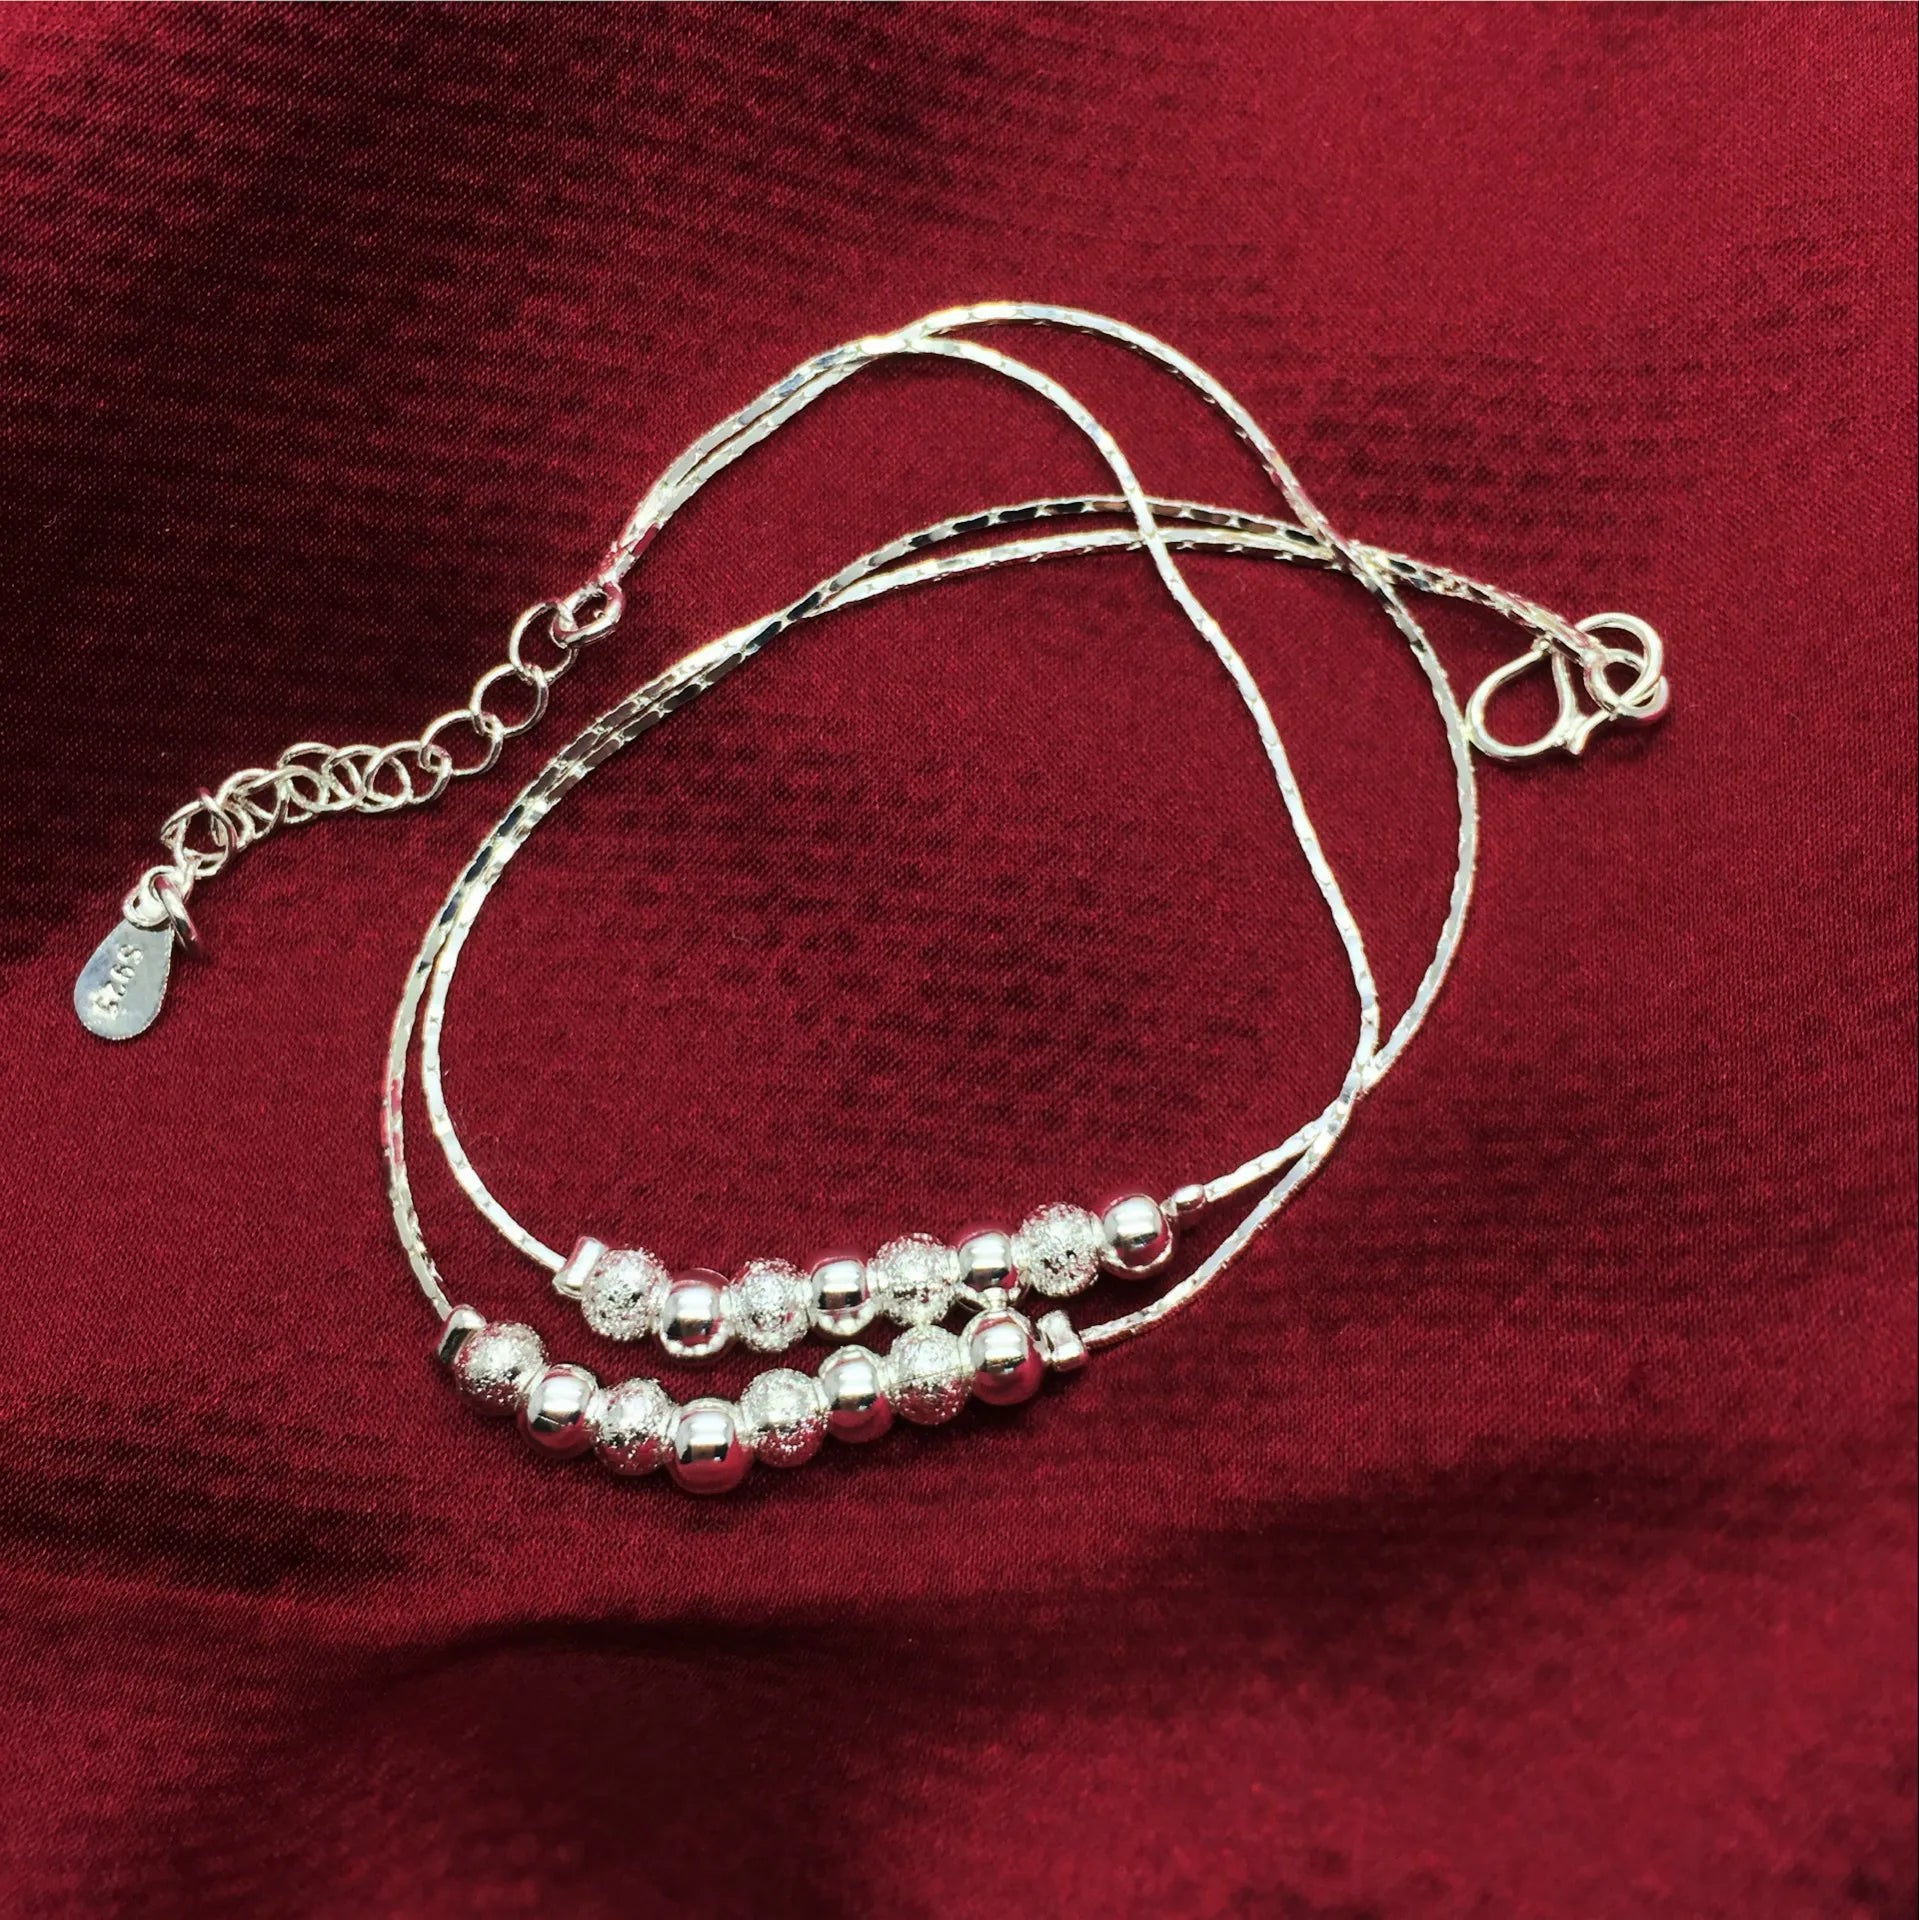 women's anklet bracelet